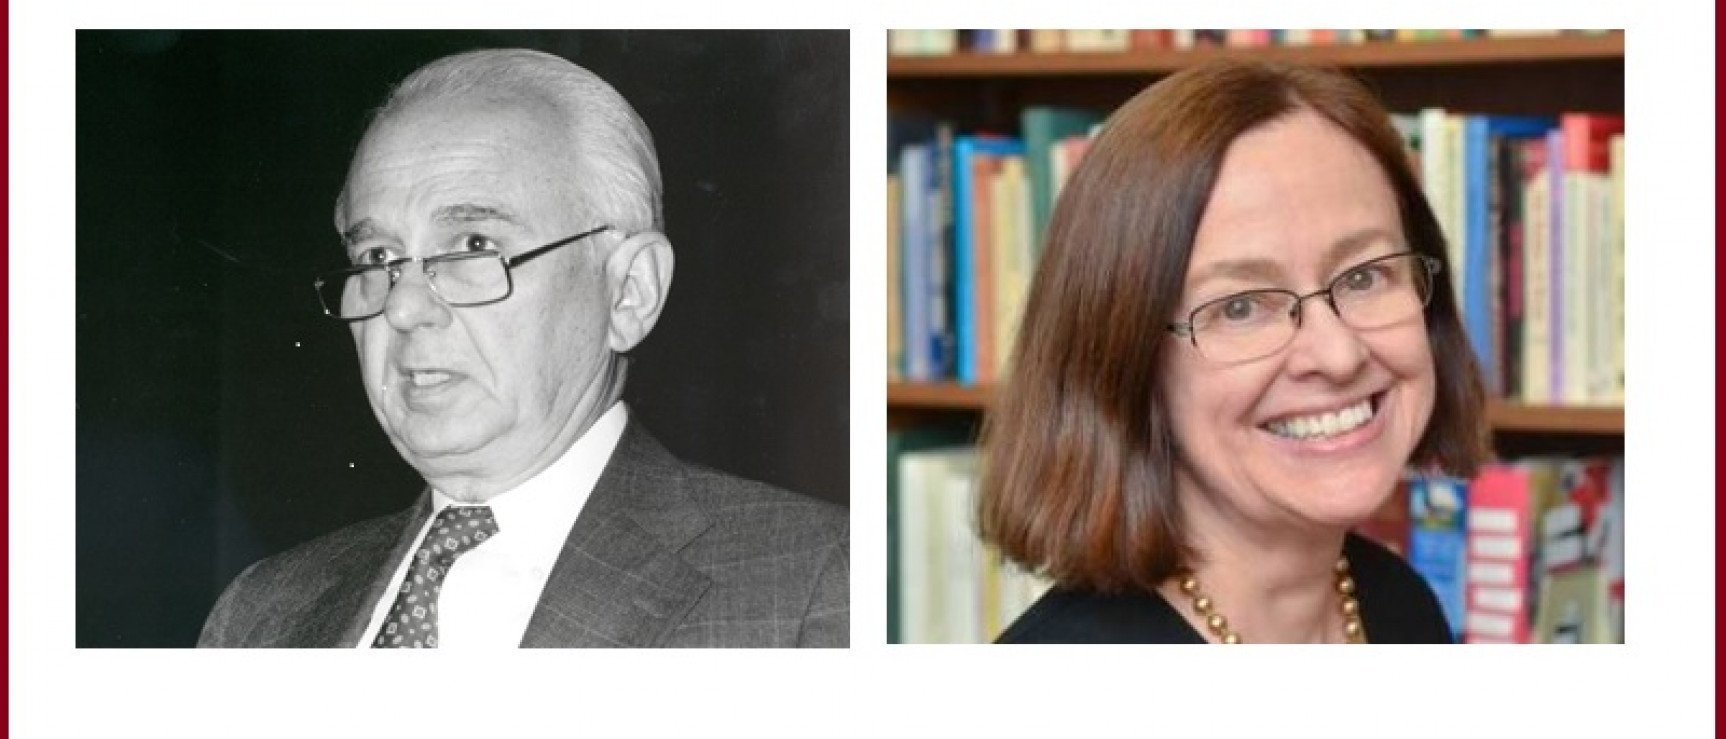 Loa profesores Enrique Pupo-Walker y Rolena Adorno, Premio Enrique Anderson Imbert 2018.